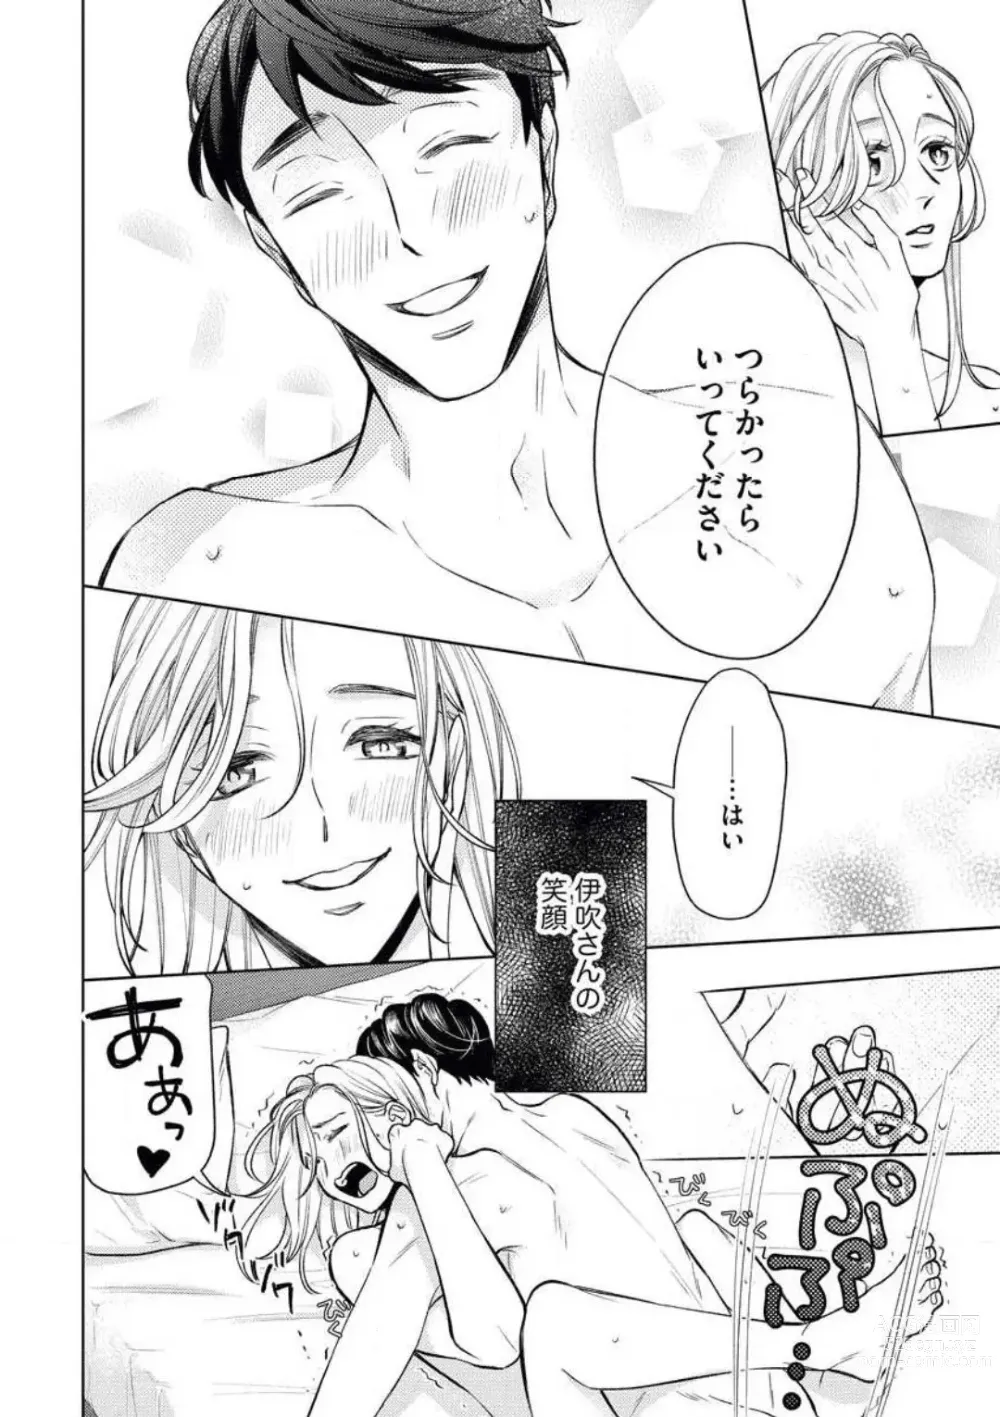 Page 30 of manga Anata o Kudasai!